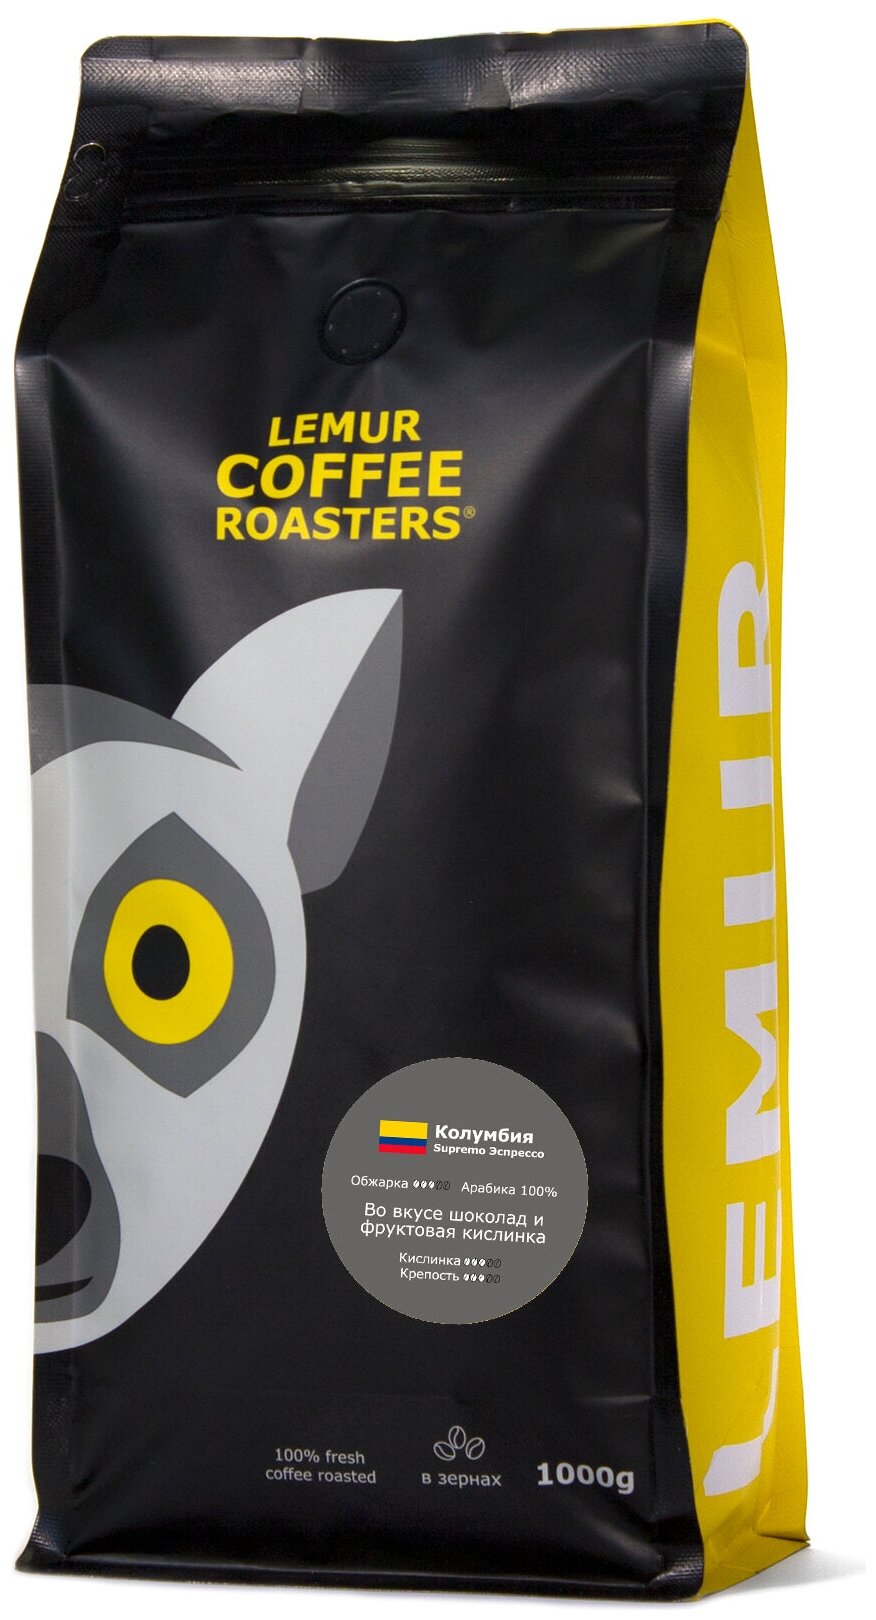 Свежеобжаренный кофе в зернах Колумбия Supremo Эспрессо Lemur Coffee Roasters, 1кг - фотография № 1